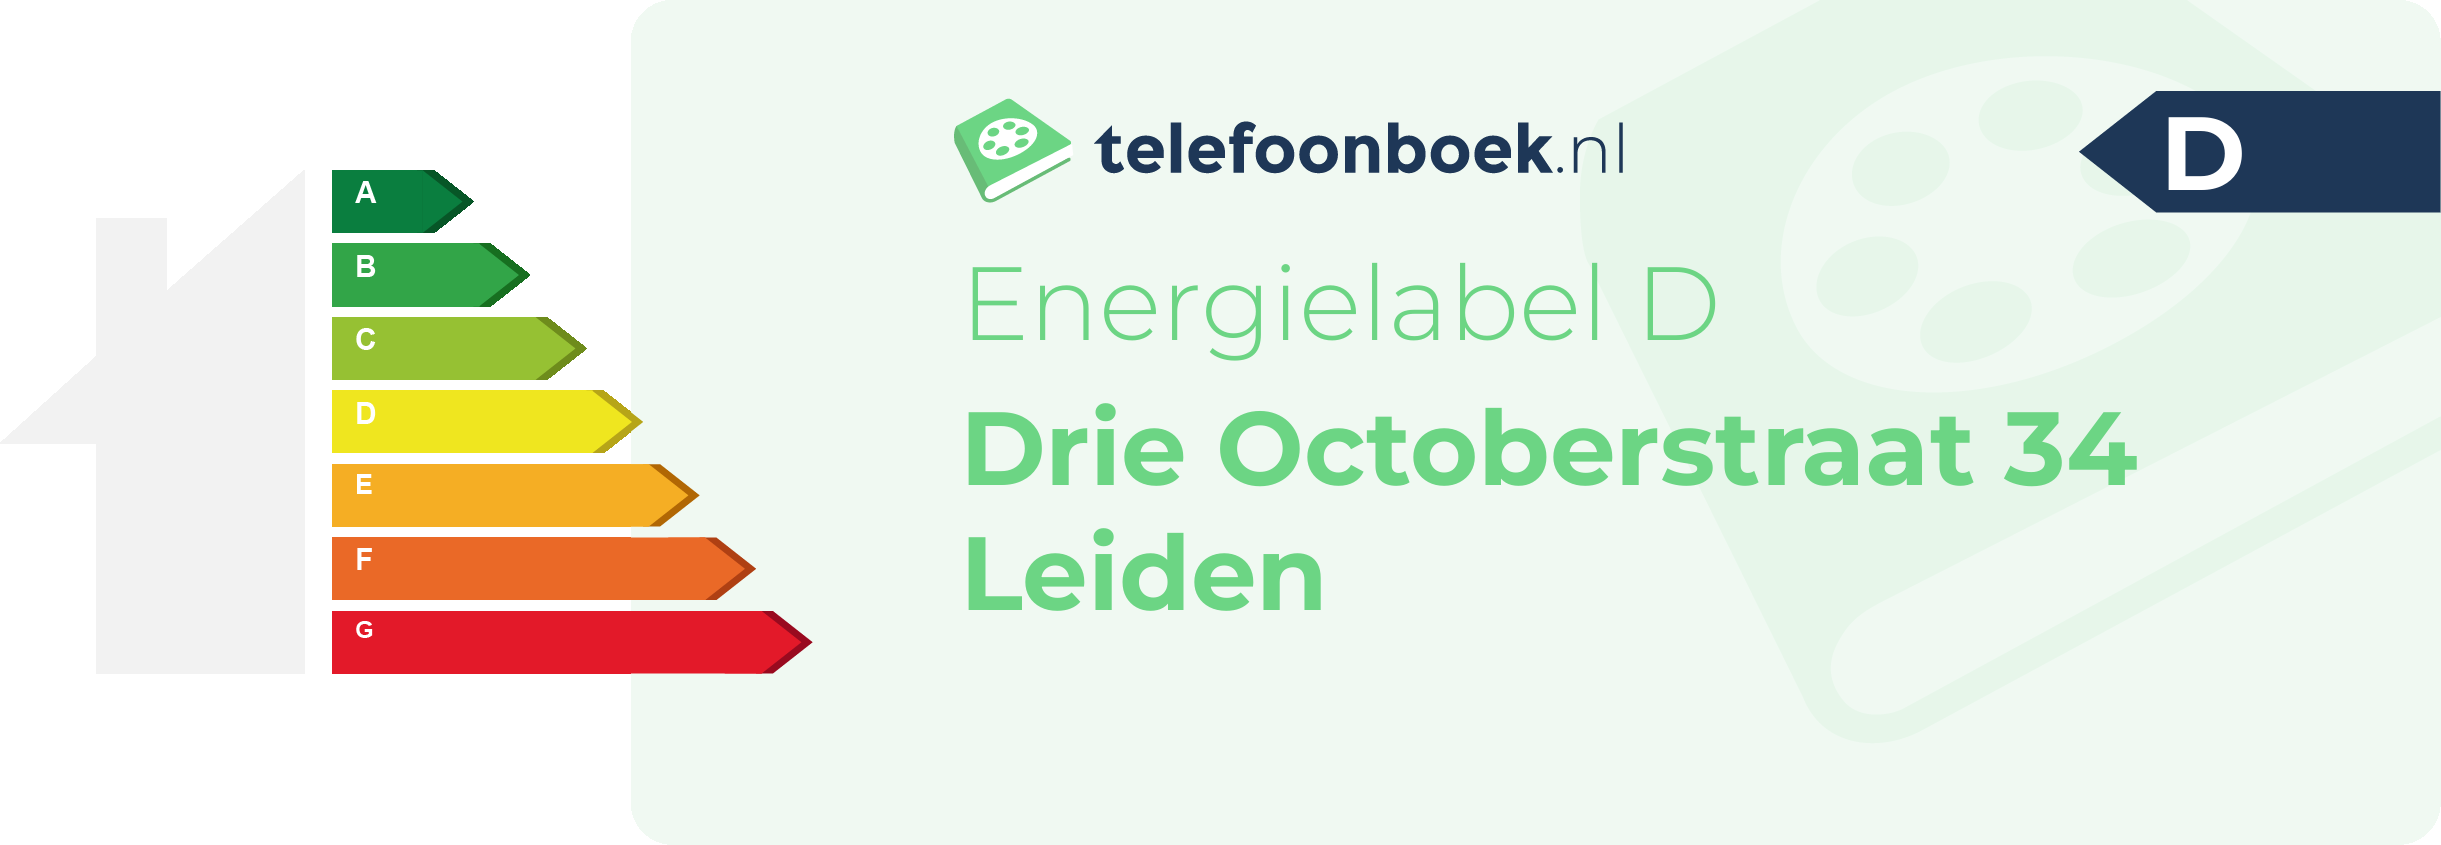 Energielabel Drie Octoberstraat 34 Leiden